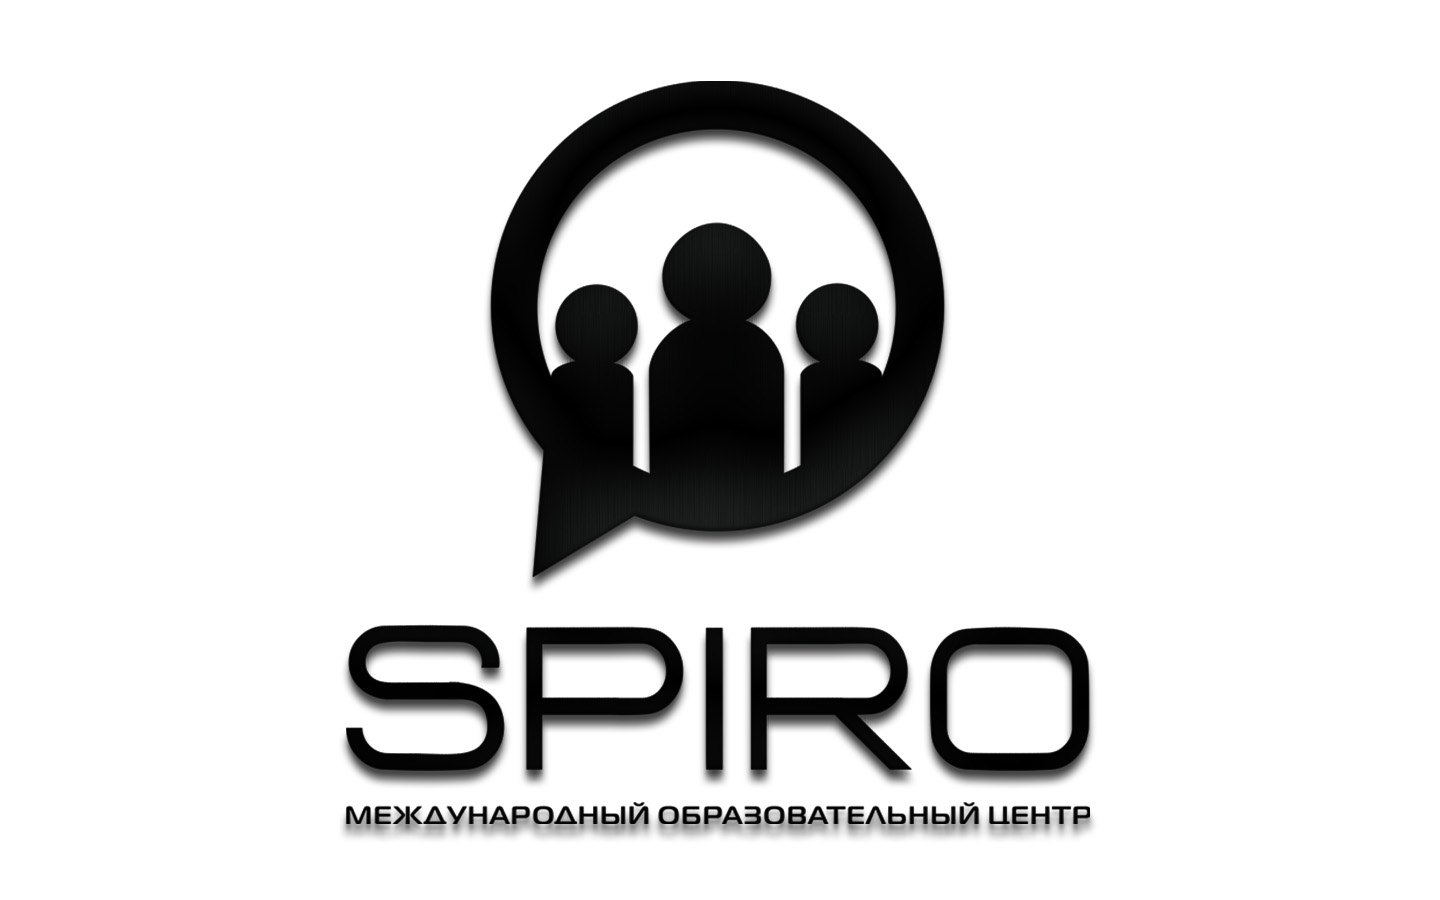 Репетитор по английскому языку для взрослых и детей в центре "SPIRO" от 17,50 руб/60 мин.